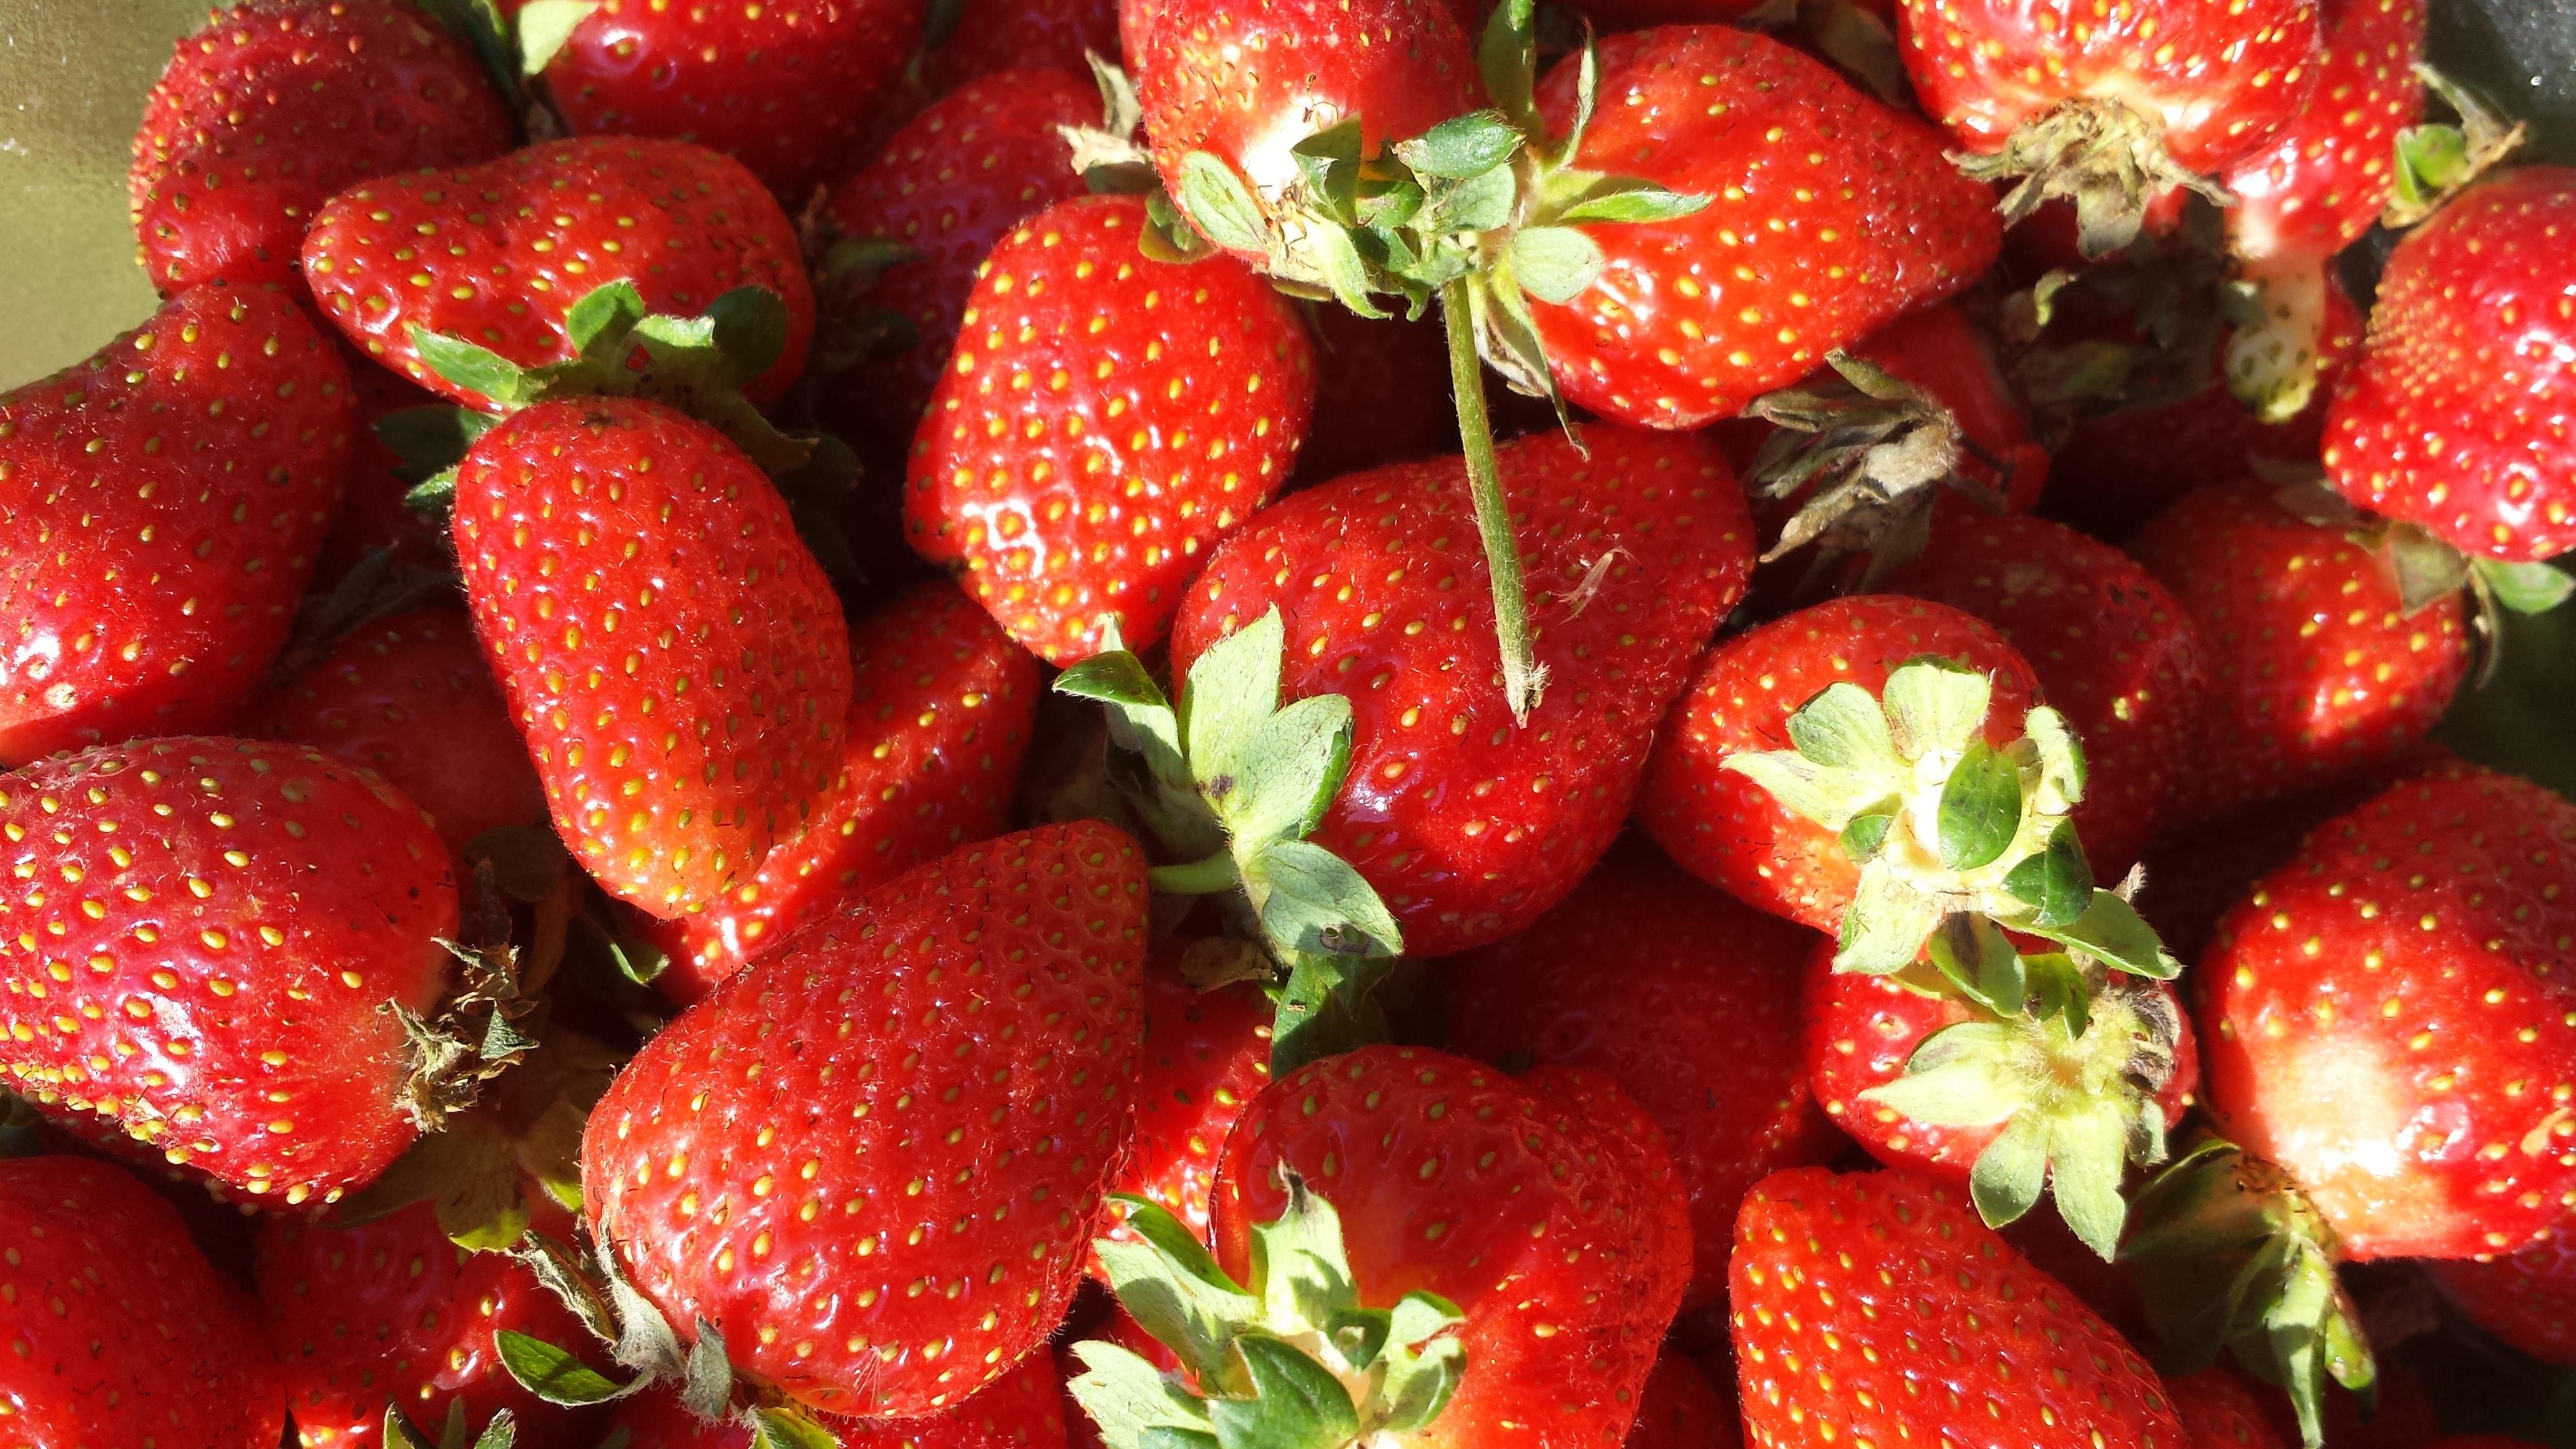 strawberries organic fresh red